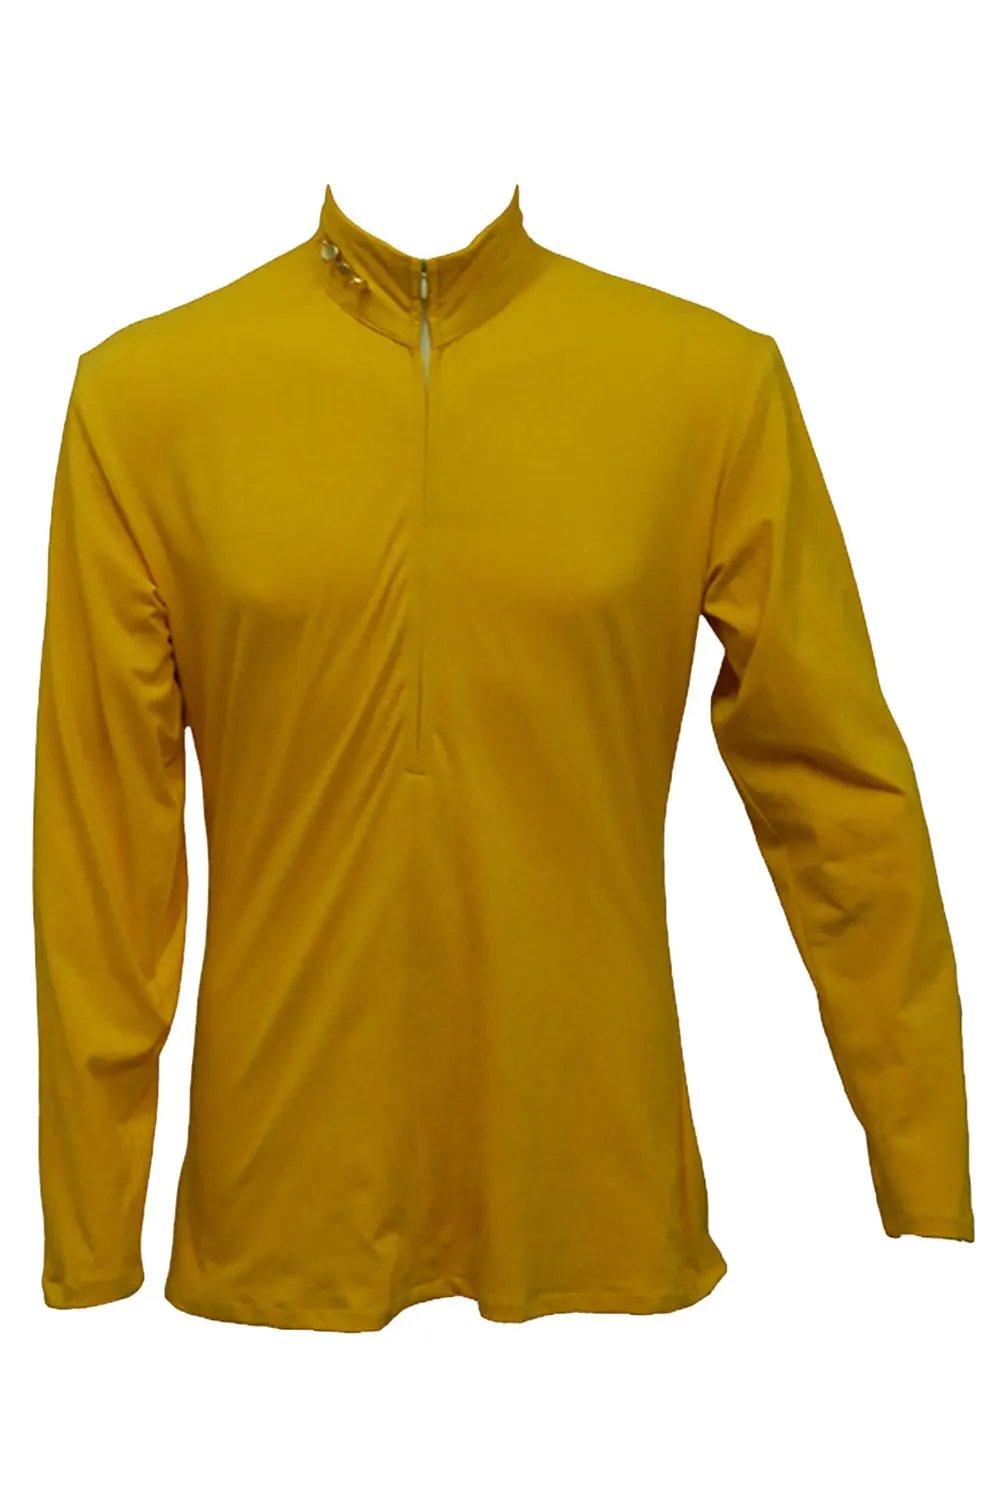 Звездный карнавальный костюм Trek NEM, Униформа, желтая куртка, костюм для взрослых на Хэллоуин, карнавальный костюм для мужчин и женщин, наряд на заказ